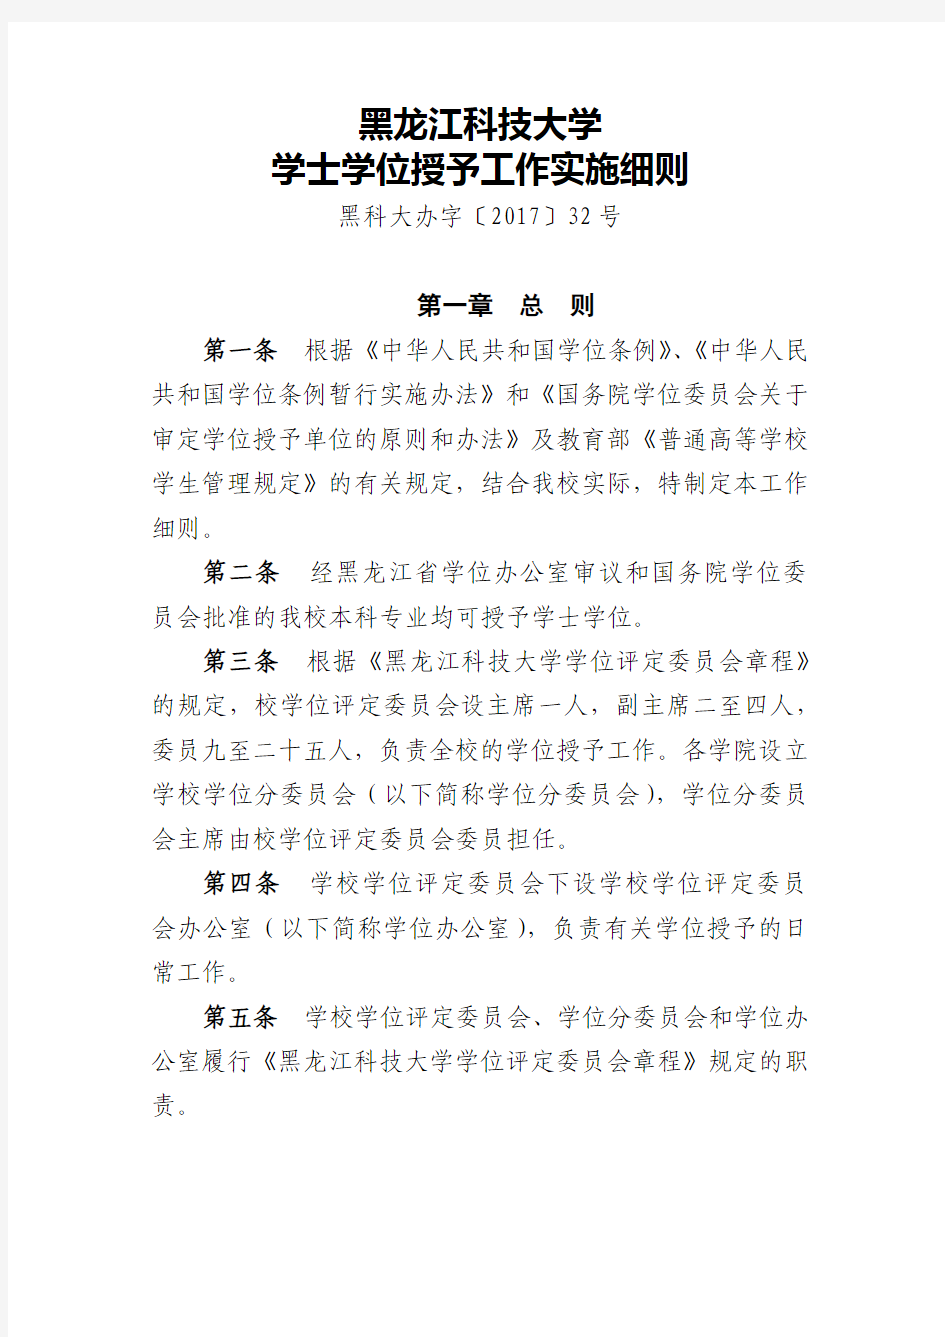 黑龙江科技大学学士学位授予工作实施细则